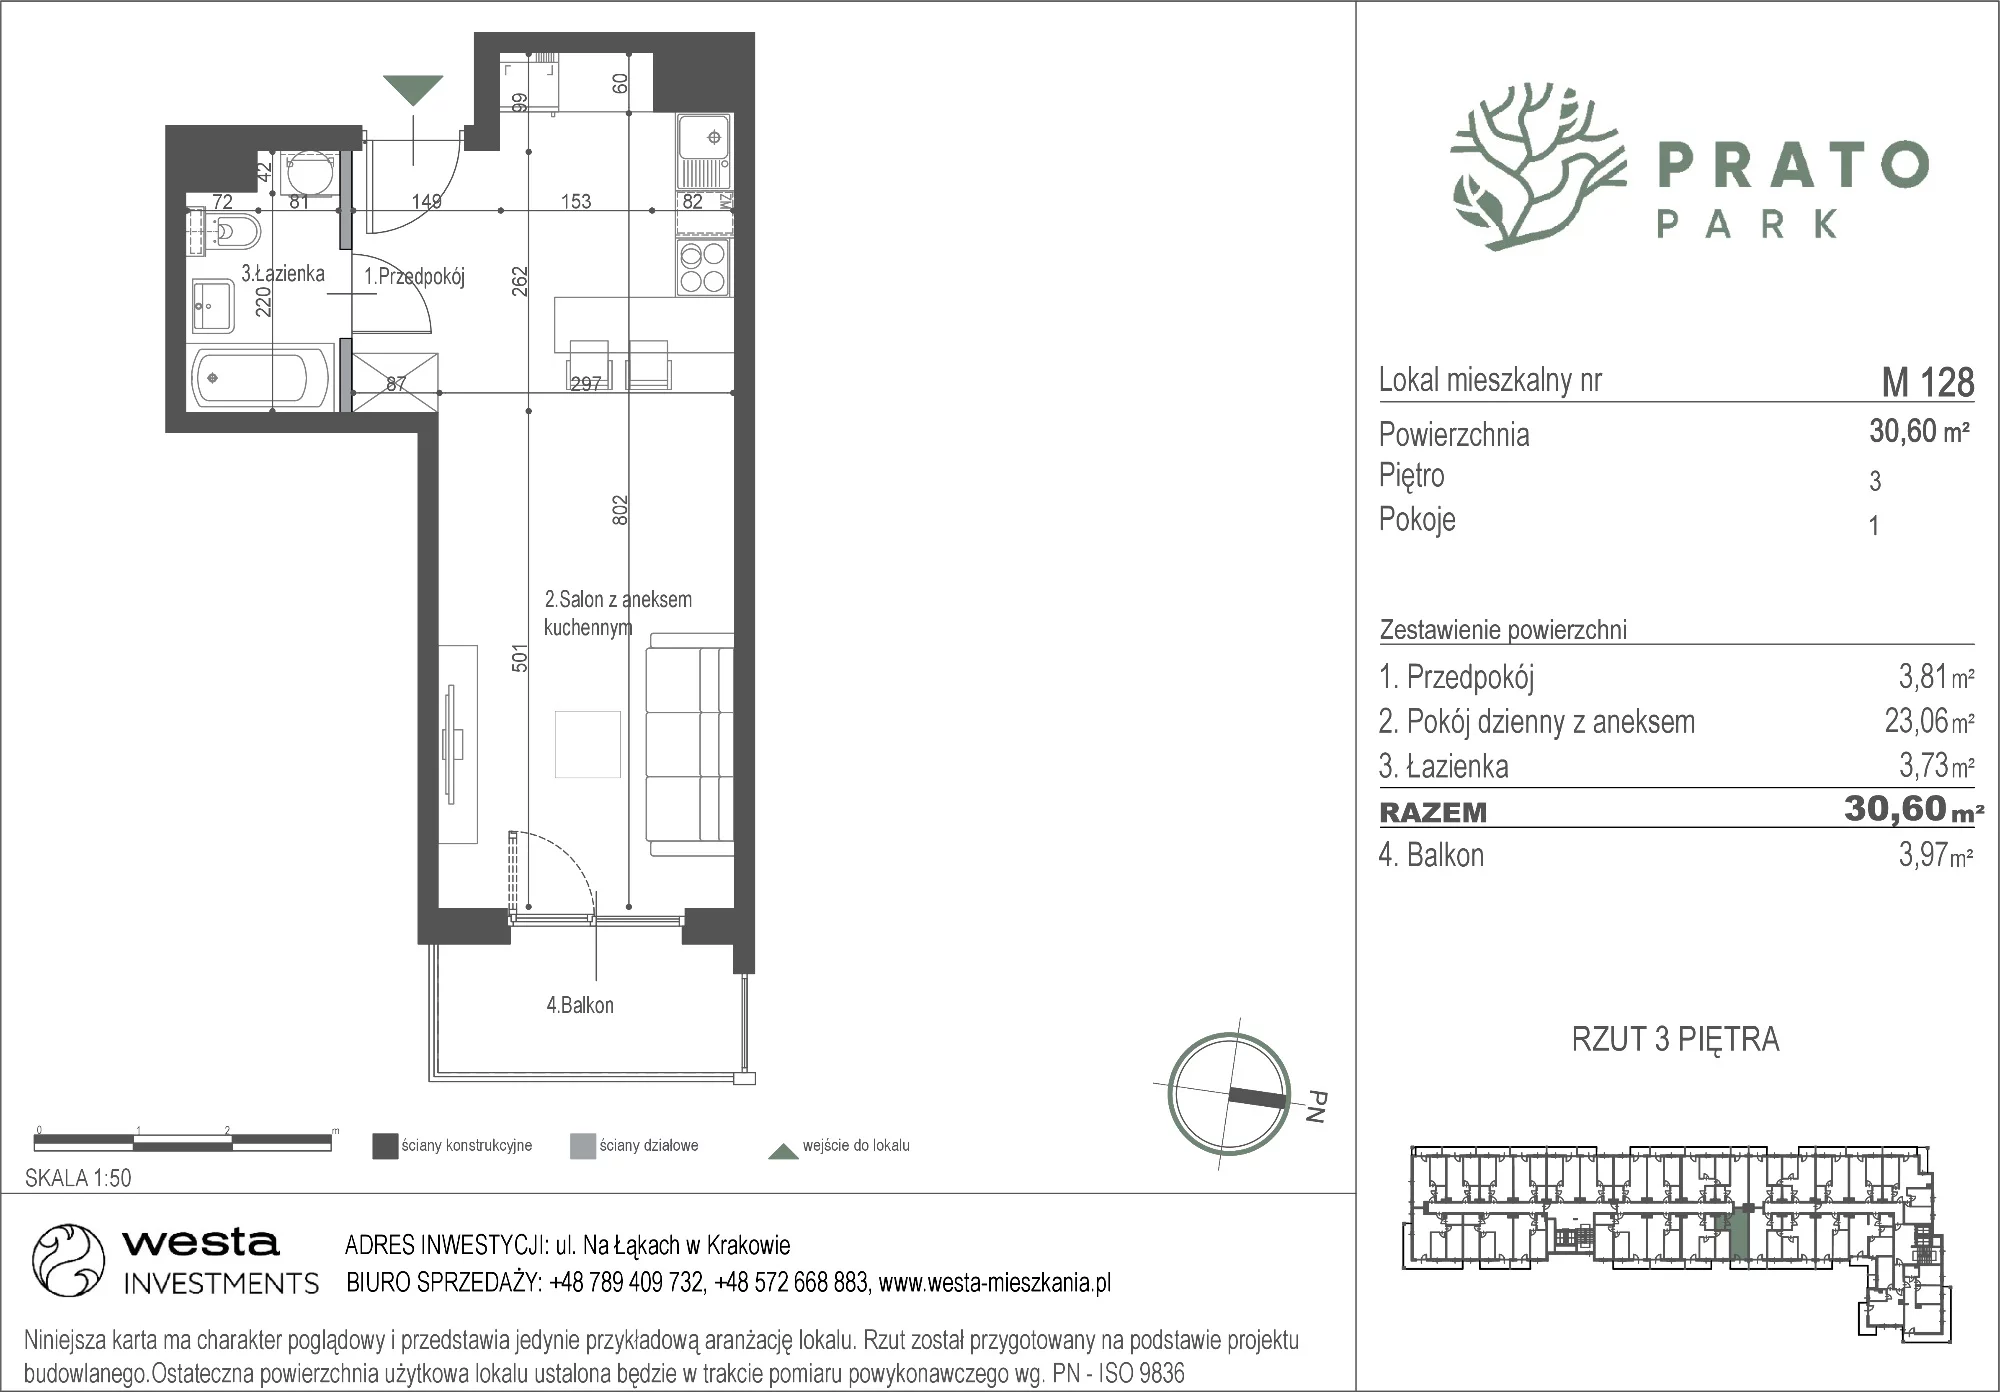 Mieszkanie 30,60 m², piętro 3, oferta nr M128, Prato Park, Kraków, Czyżyny, ul. Na Łąkach